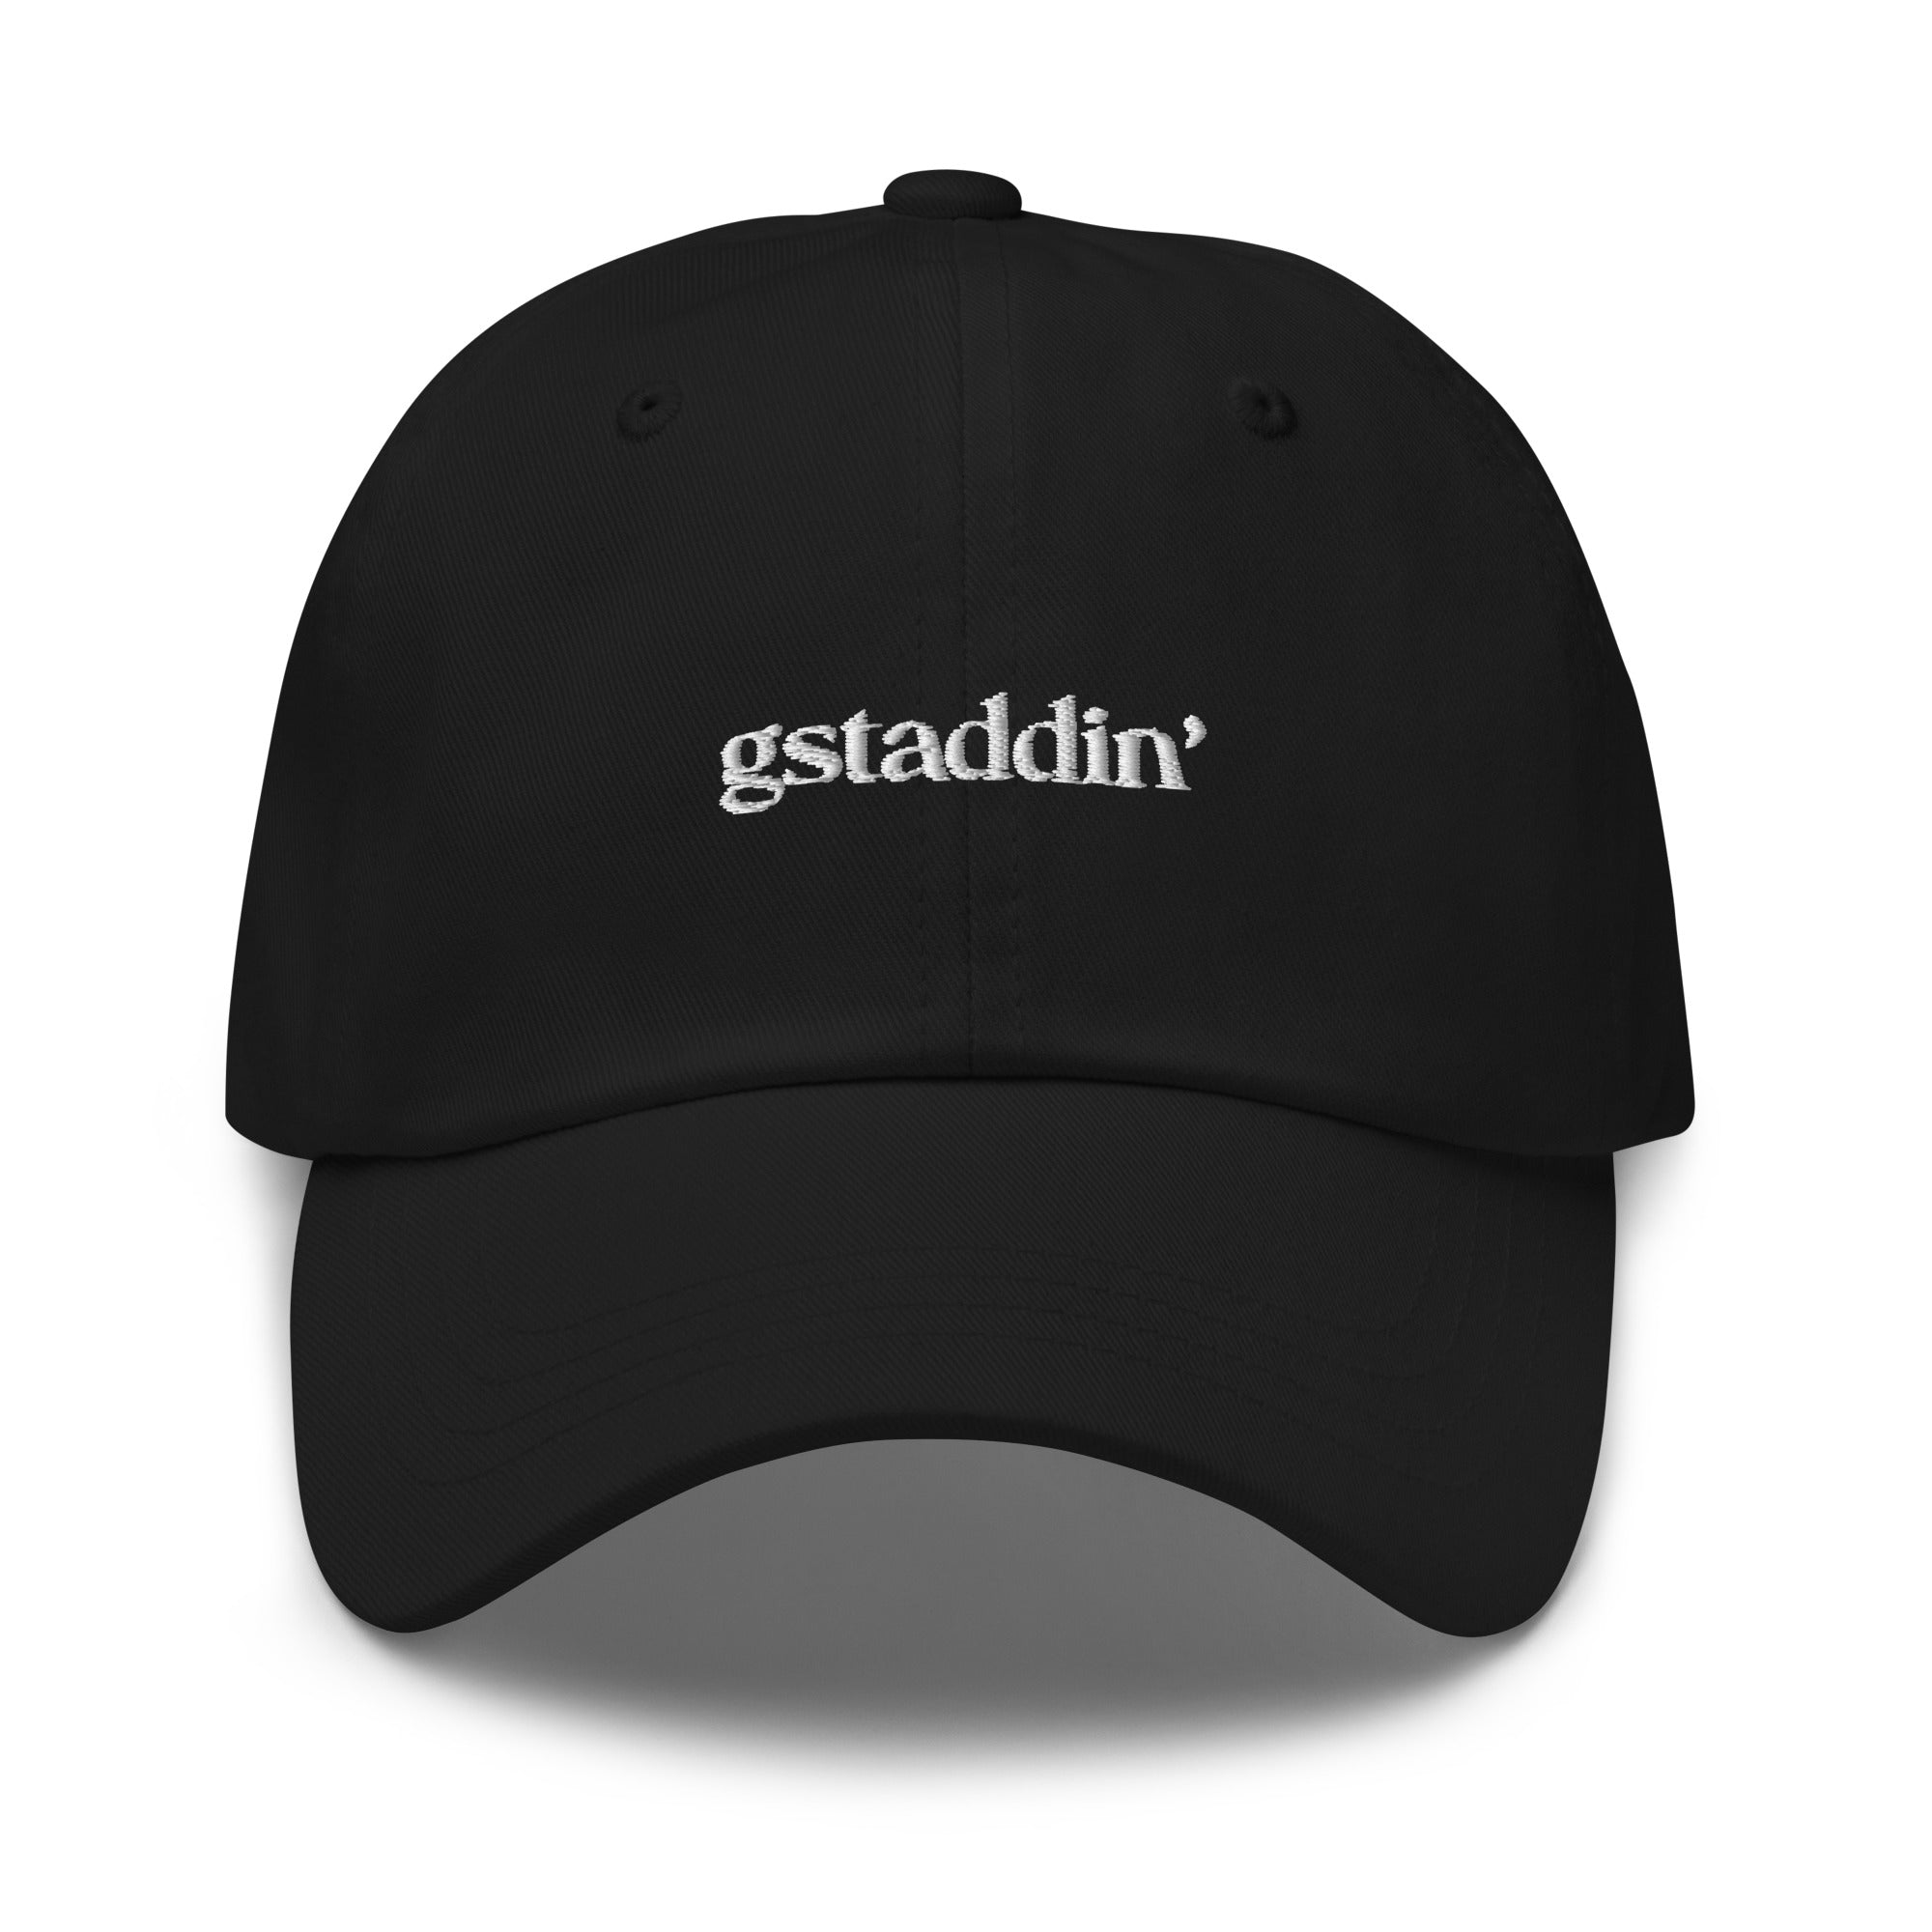 Gstaddin' - Dad hat